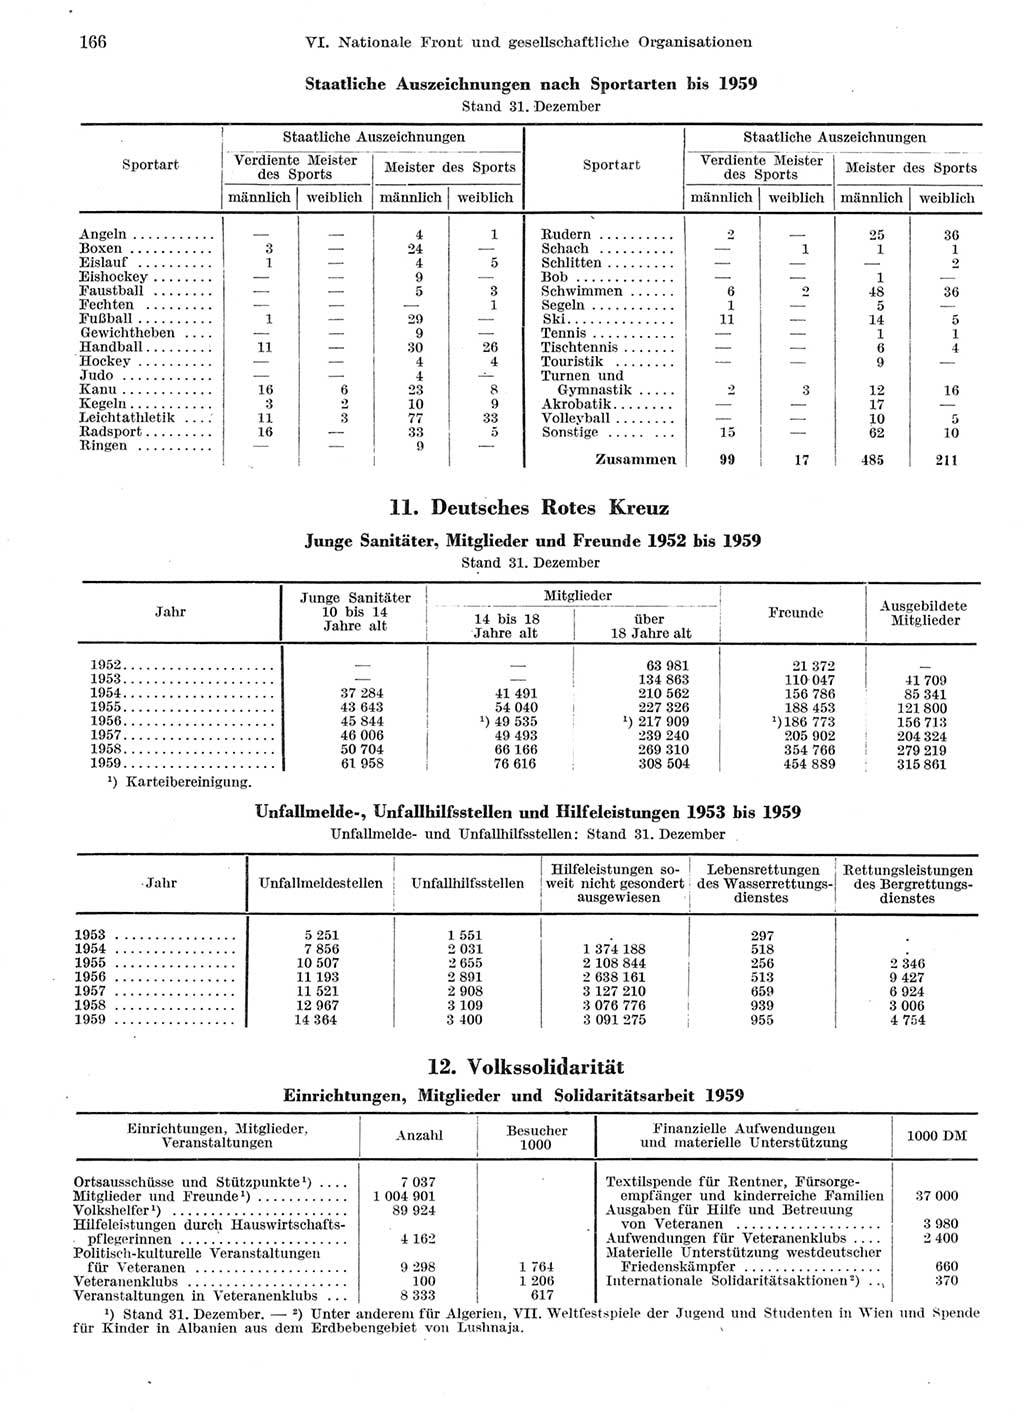 Statistisches Jahrbuch der Deutschen Demokratischen Republik (DDR) 1959, Seite 166 (Stat. Jb. DDR 1959, S. 166)